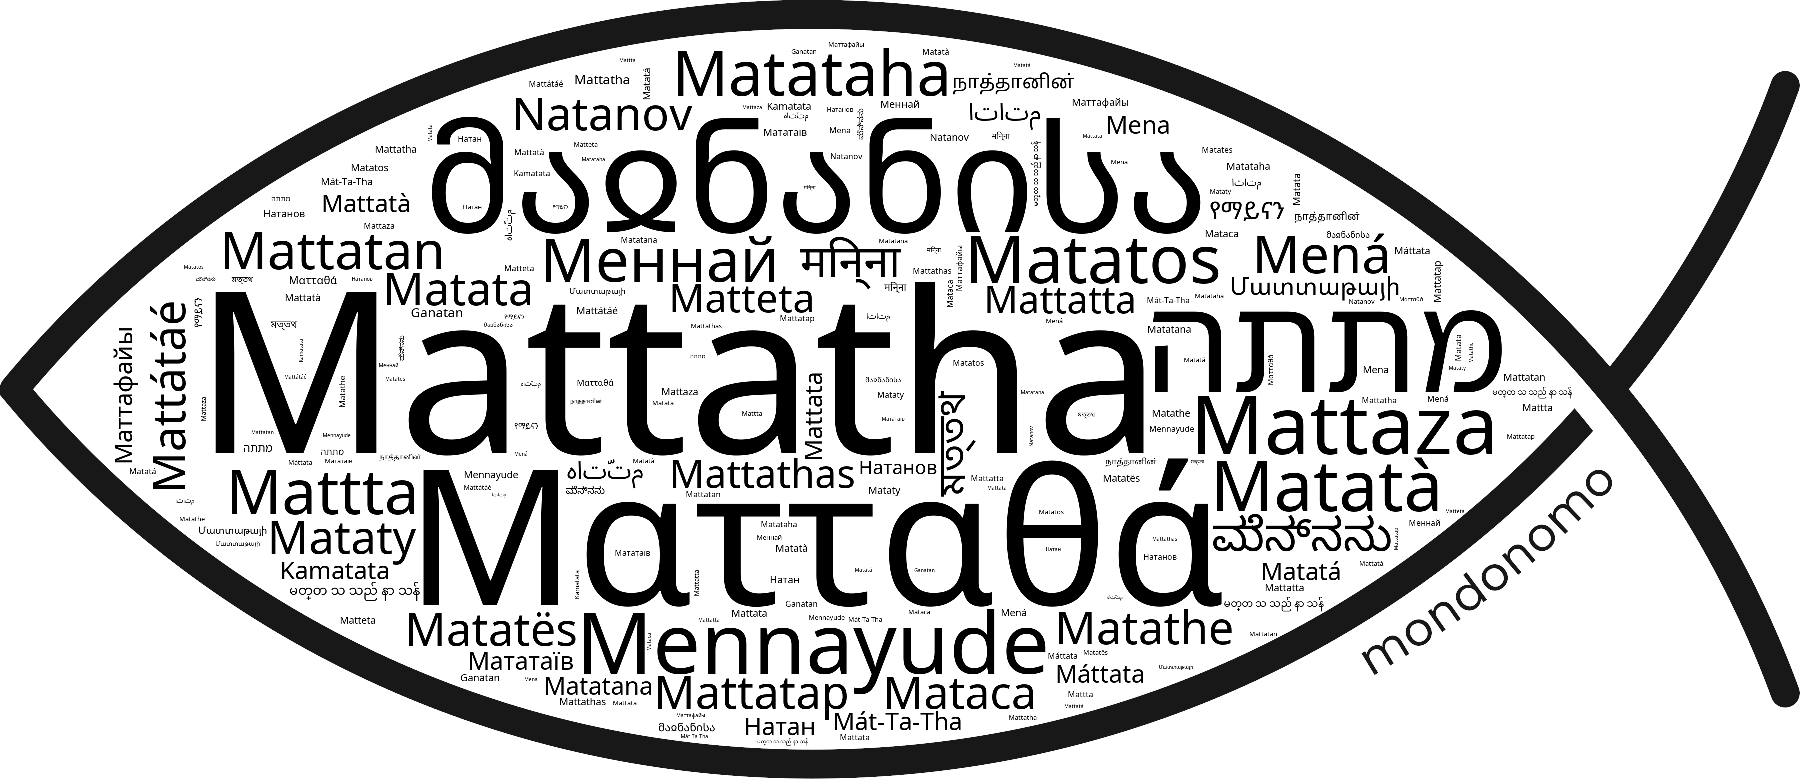 Name Mattatha in the world's Bibles